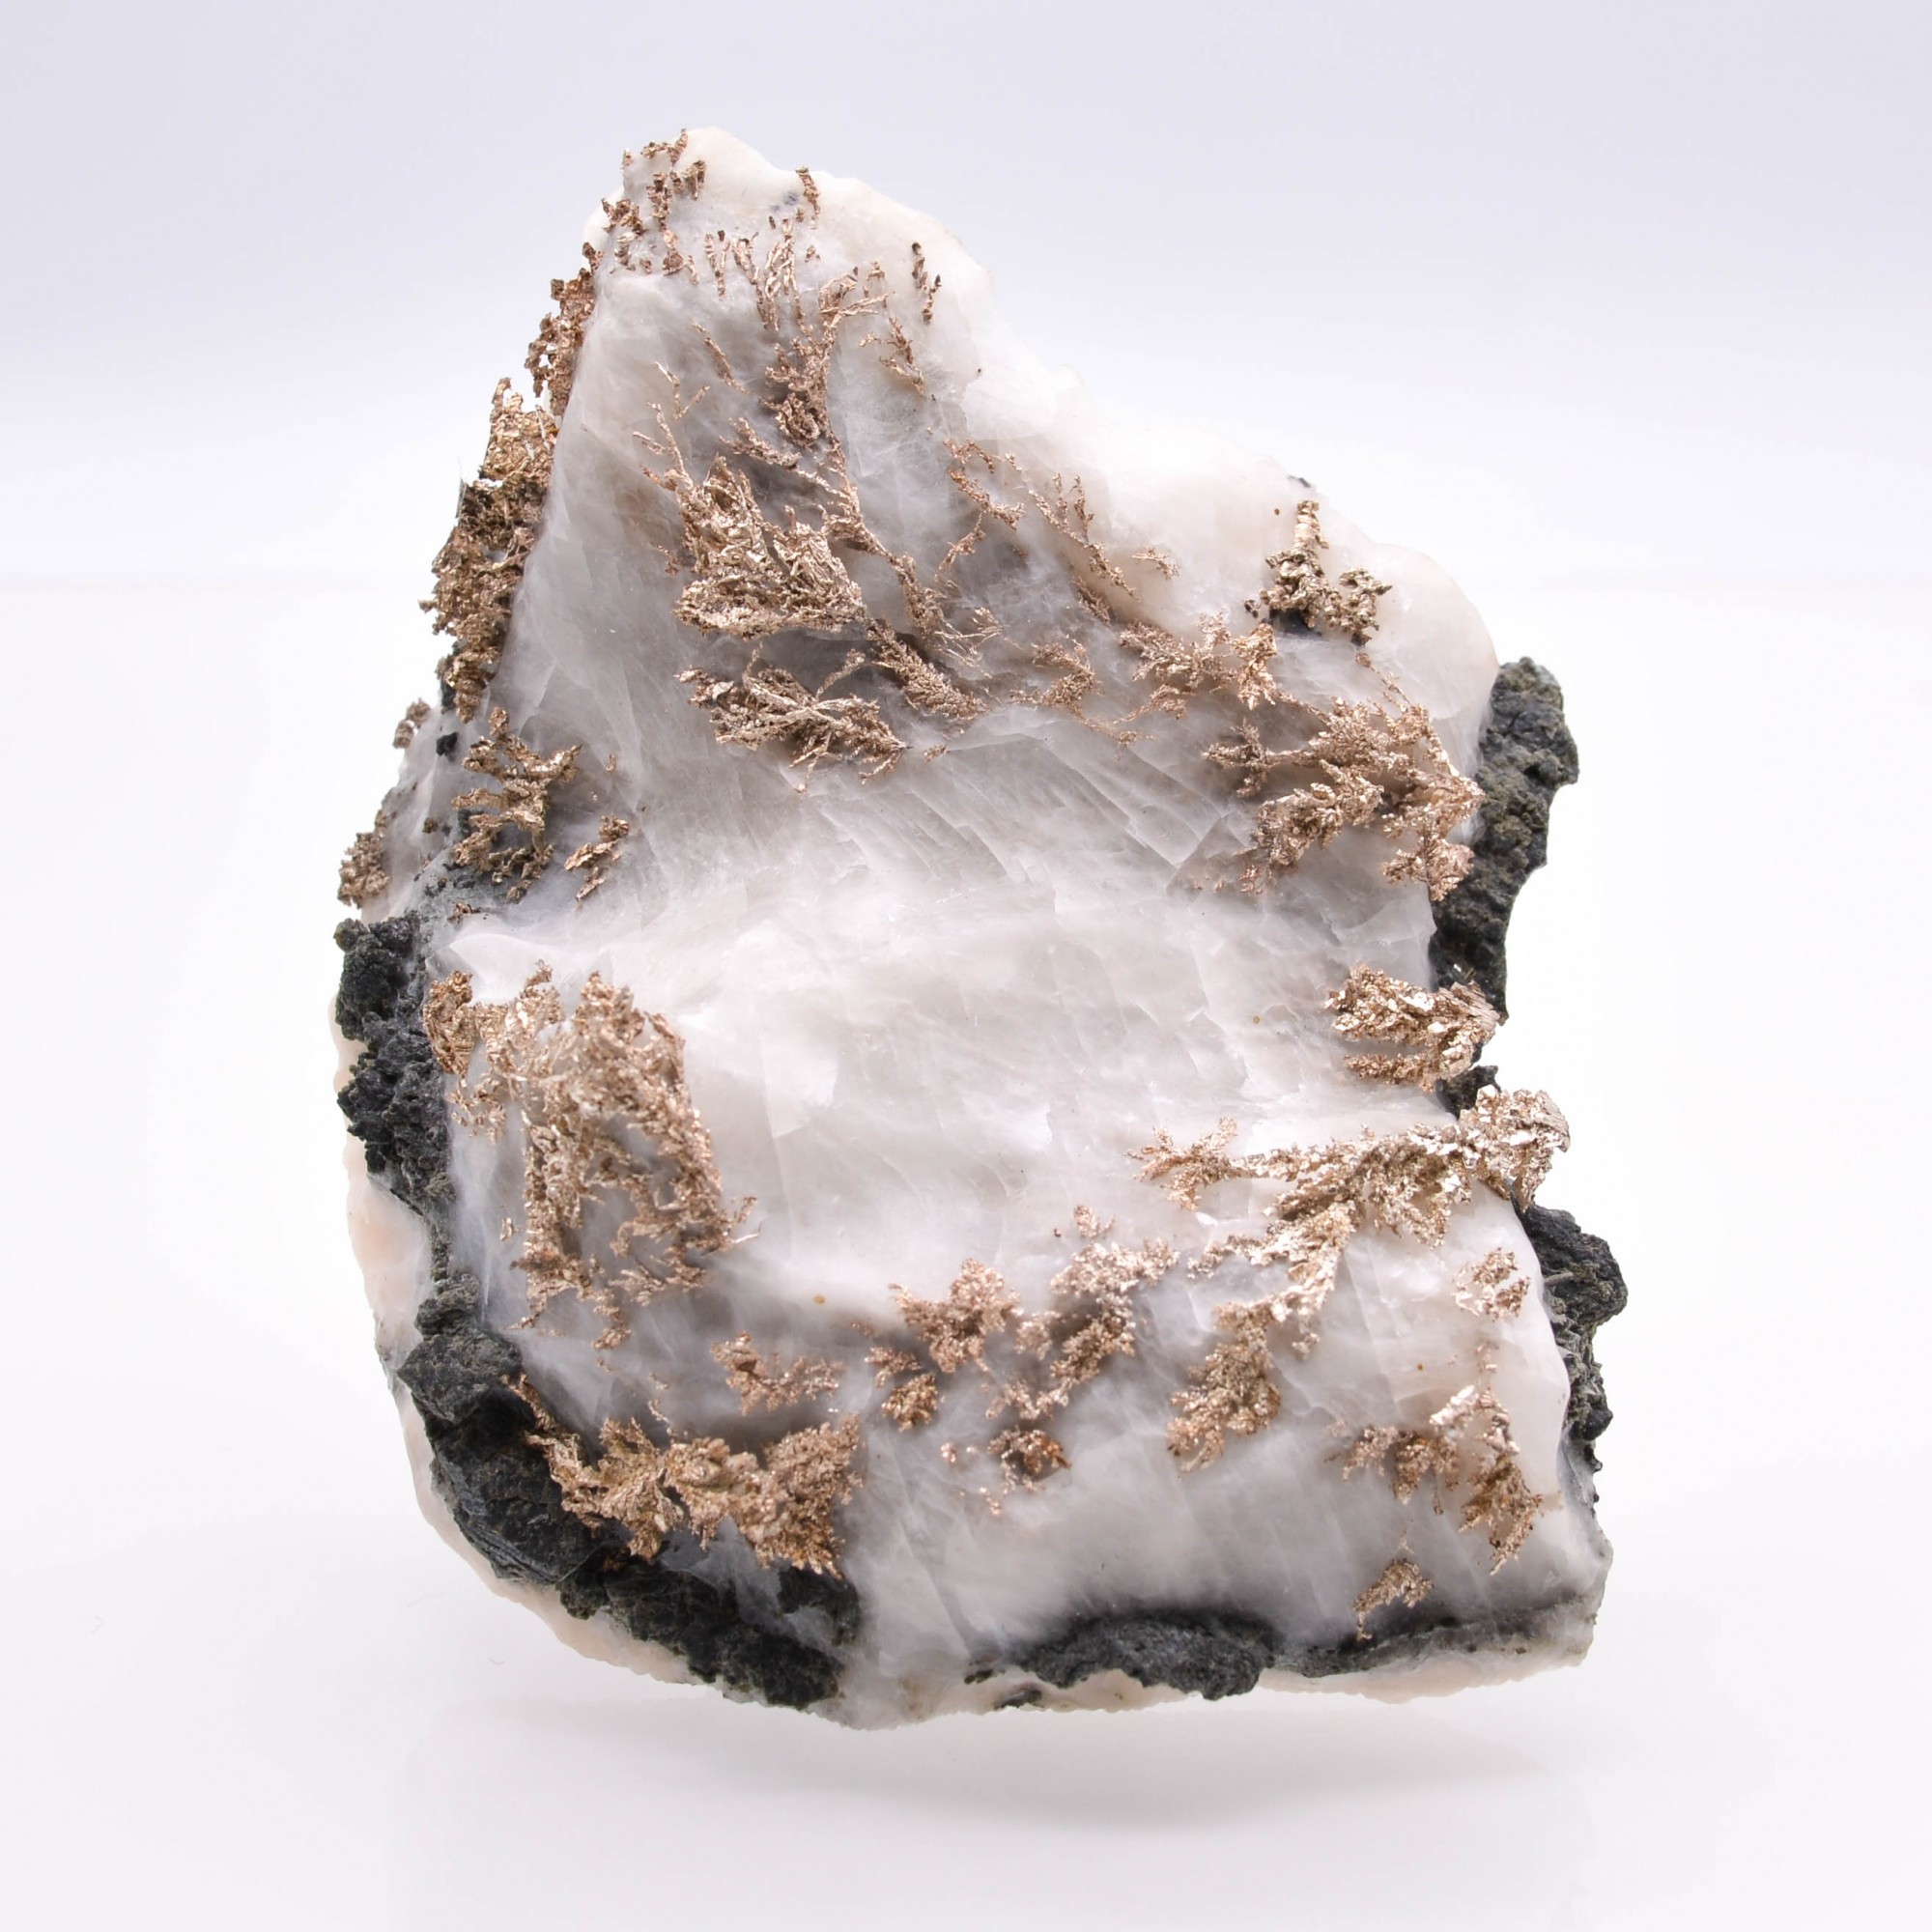 Argent natif sur calcite - Mine Bouismas, Bou Azzer, Maroc